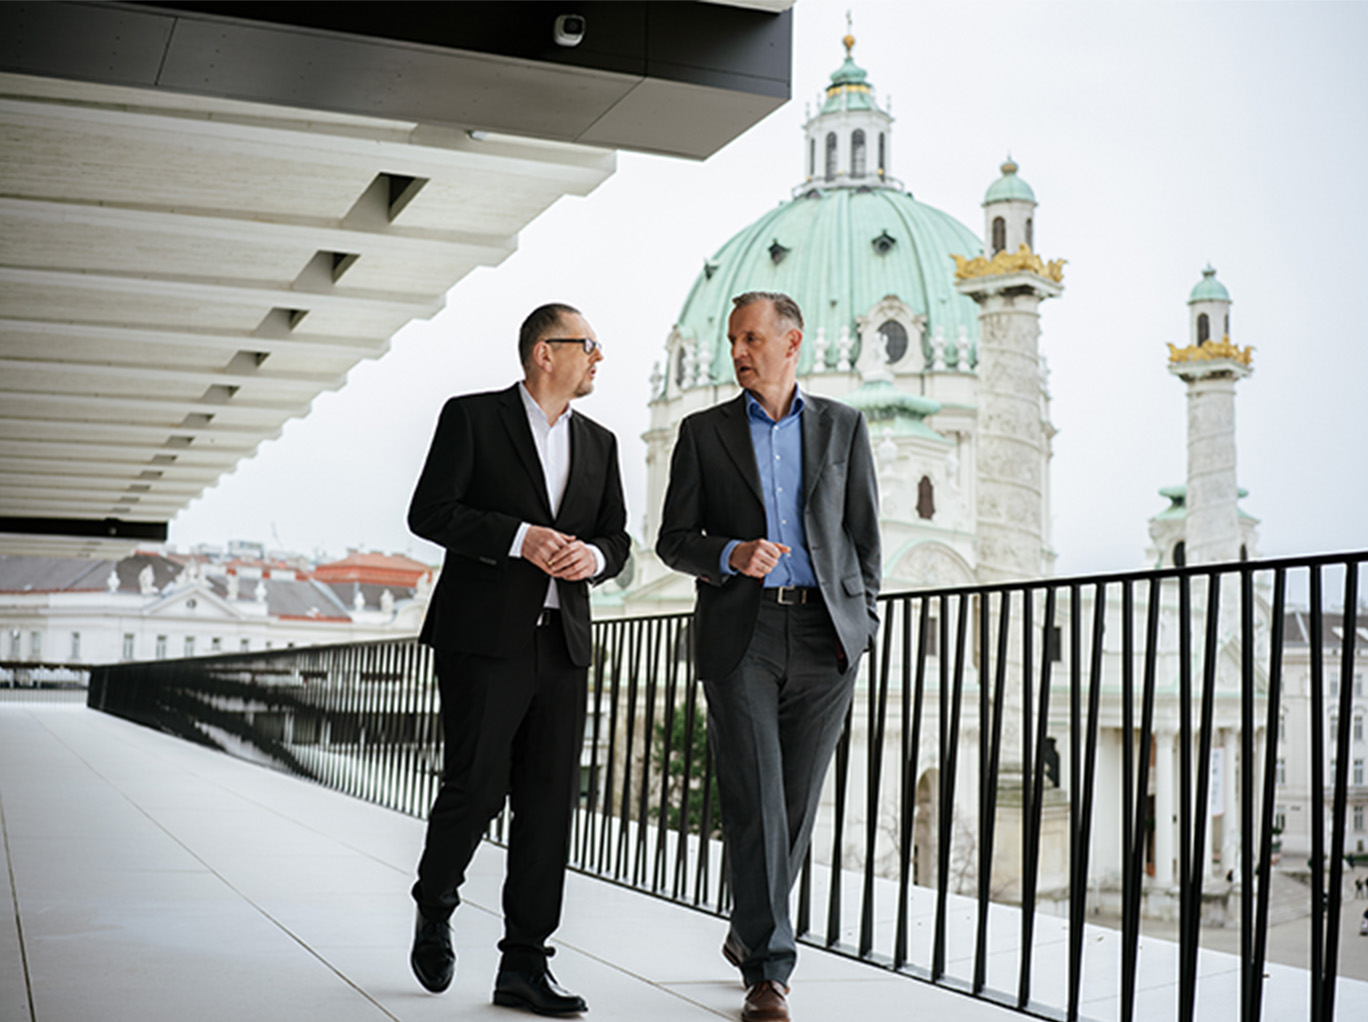 Der Generaldirektor Mag. Dr. Martin Krajcsir und der Generaldirektor-Stellvertreter DI Peter Weinelt laufen über die Terrasse des Wien Museums. Sie befinden sich im Gespräch miteinander und im Hintergrund ist die Karlskirche zu sehen.